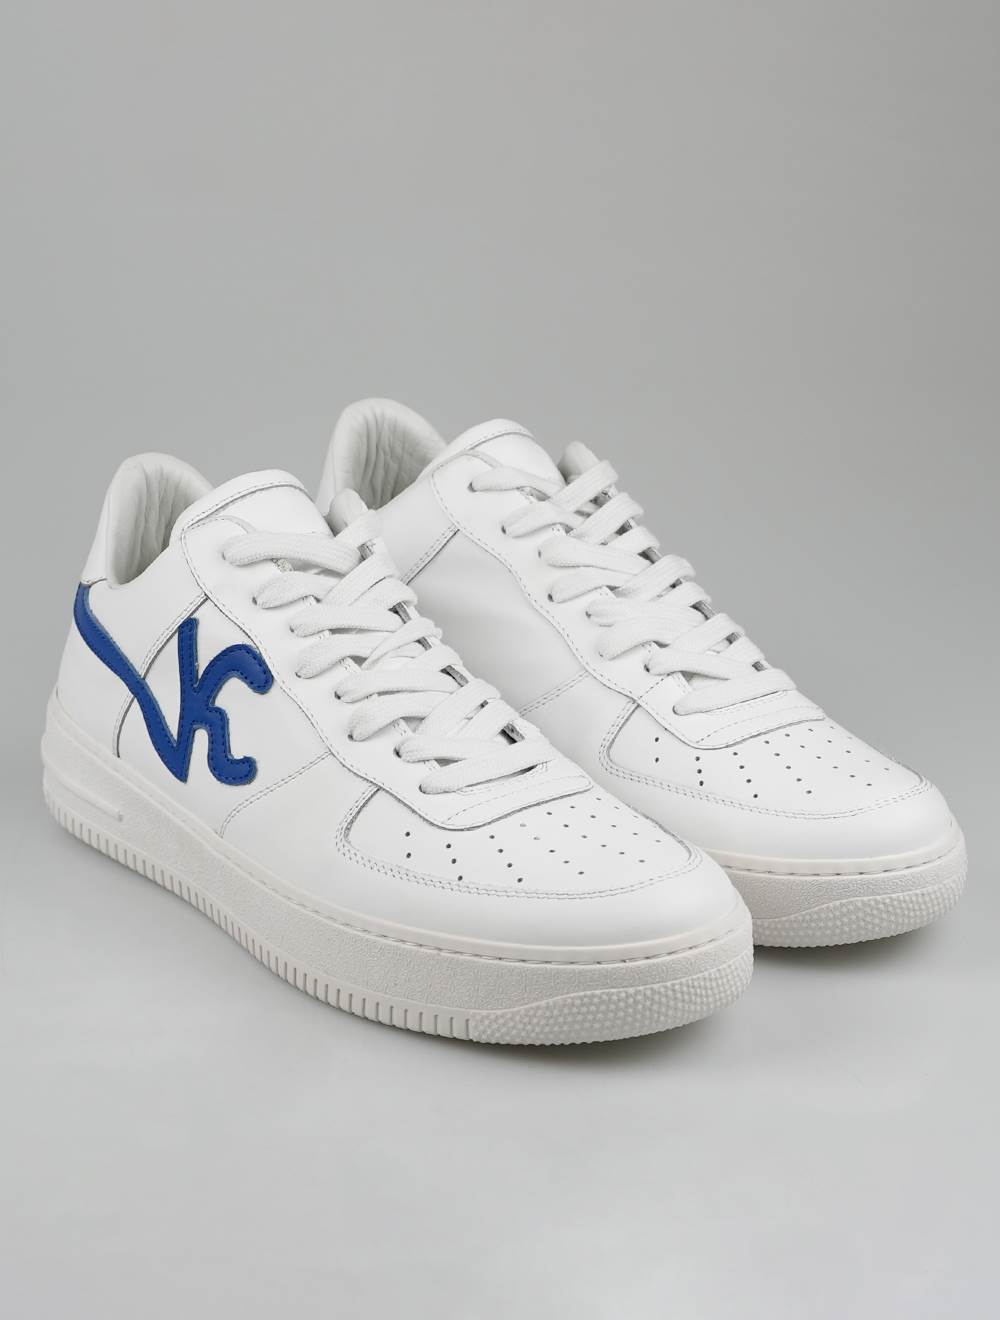 KNT Kiton White Blue Leather Sneakers